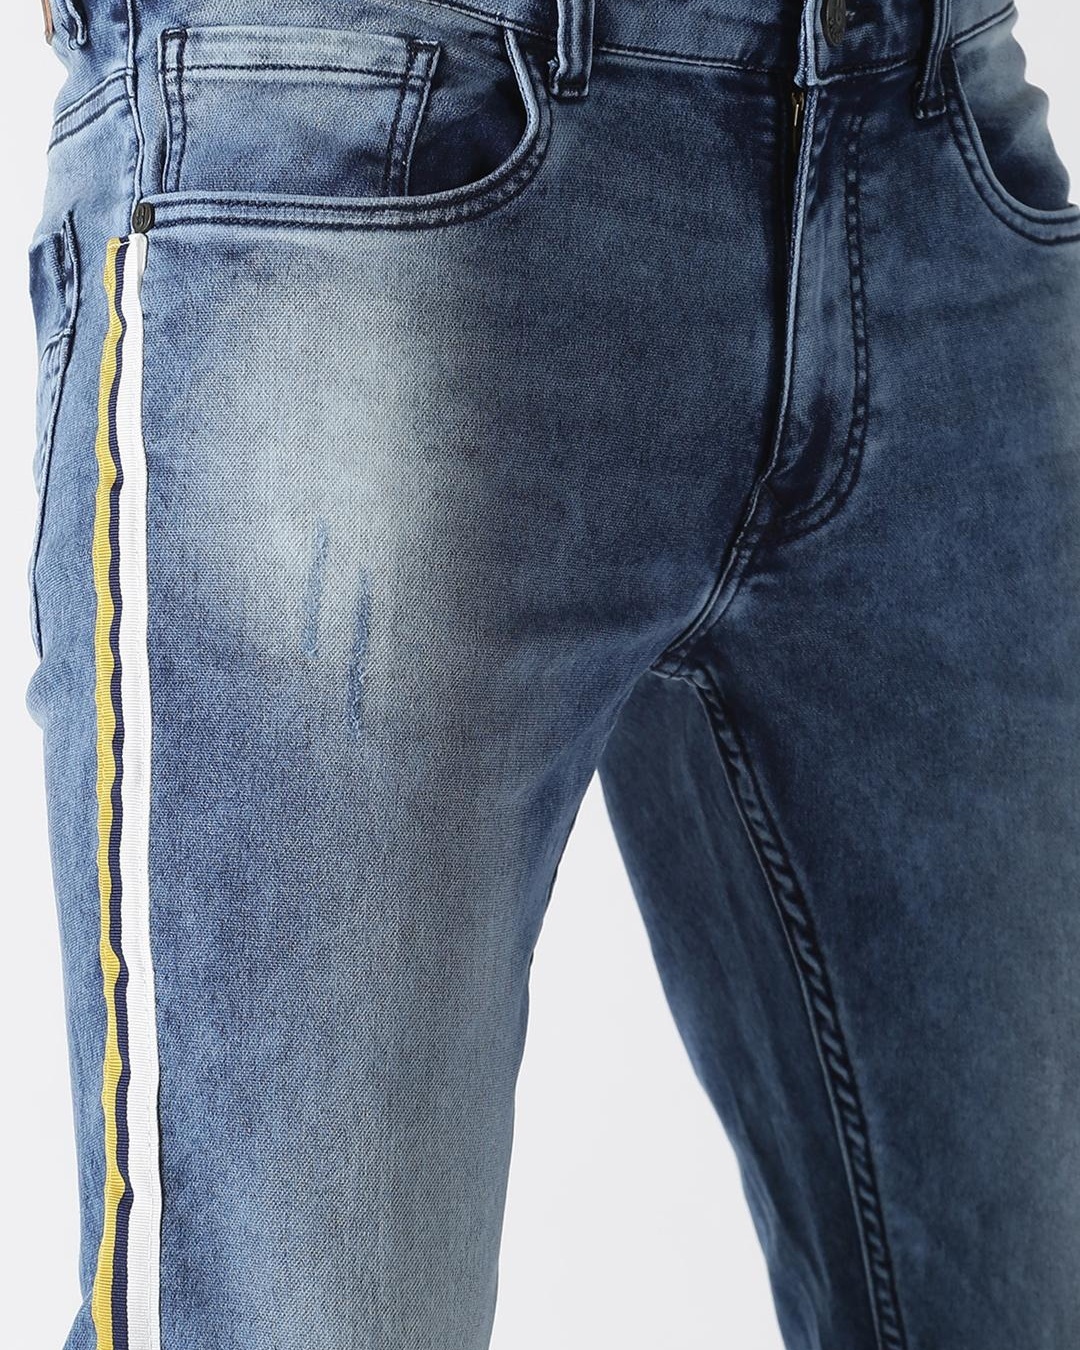 Buy Men S Blue Side Striped Slim Fit Jeans For Men Blue Online At Bewakoof